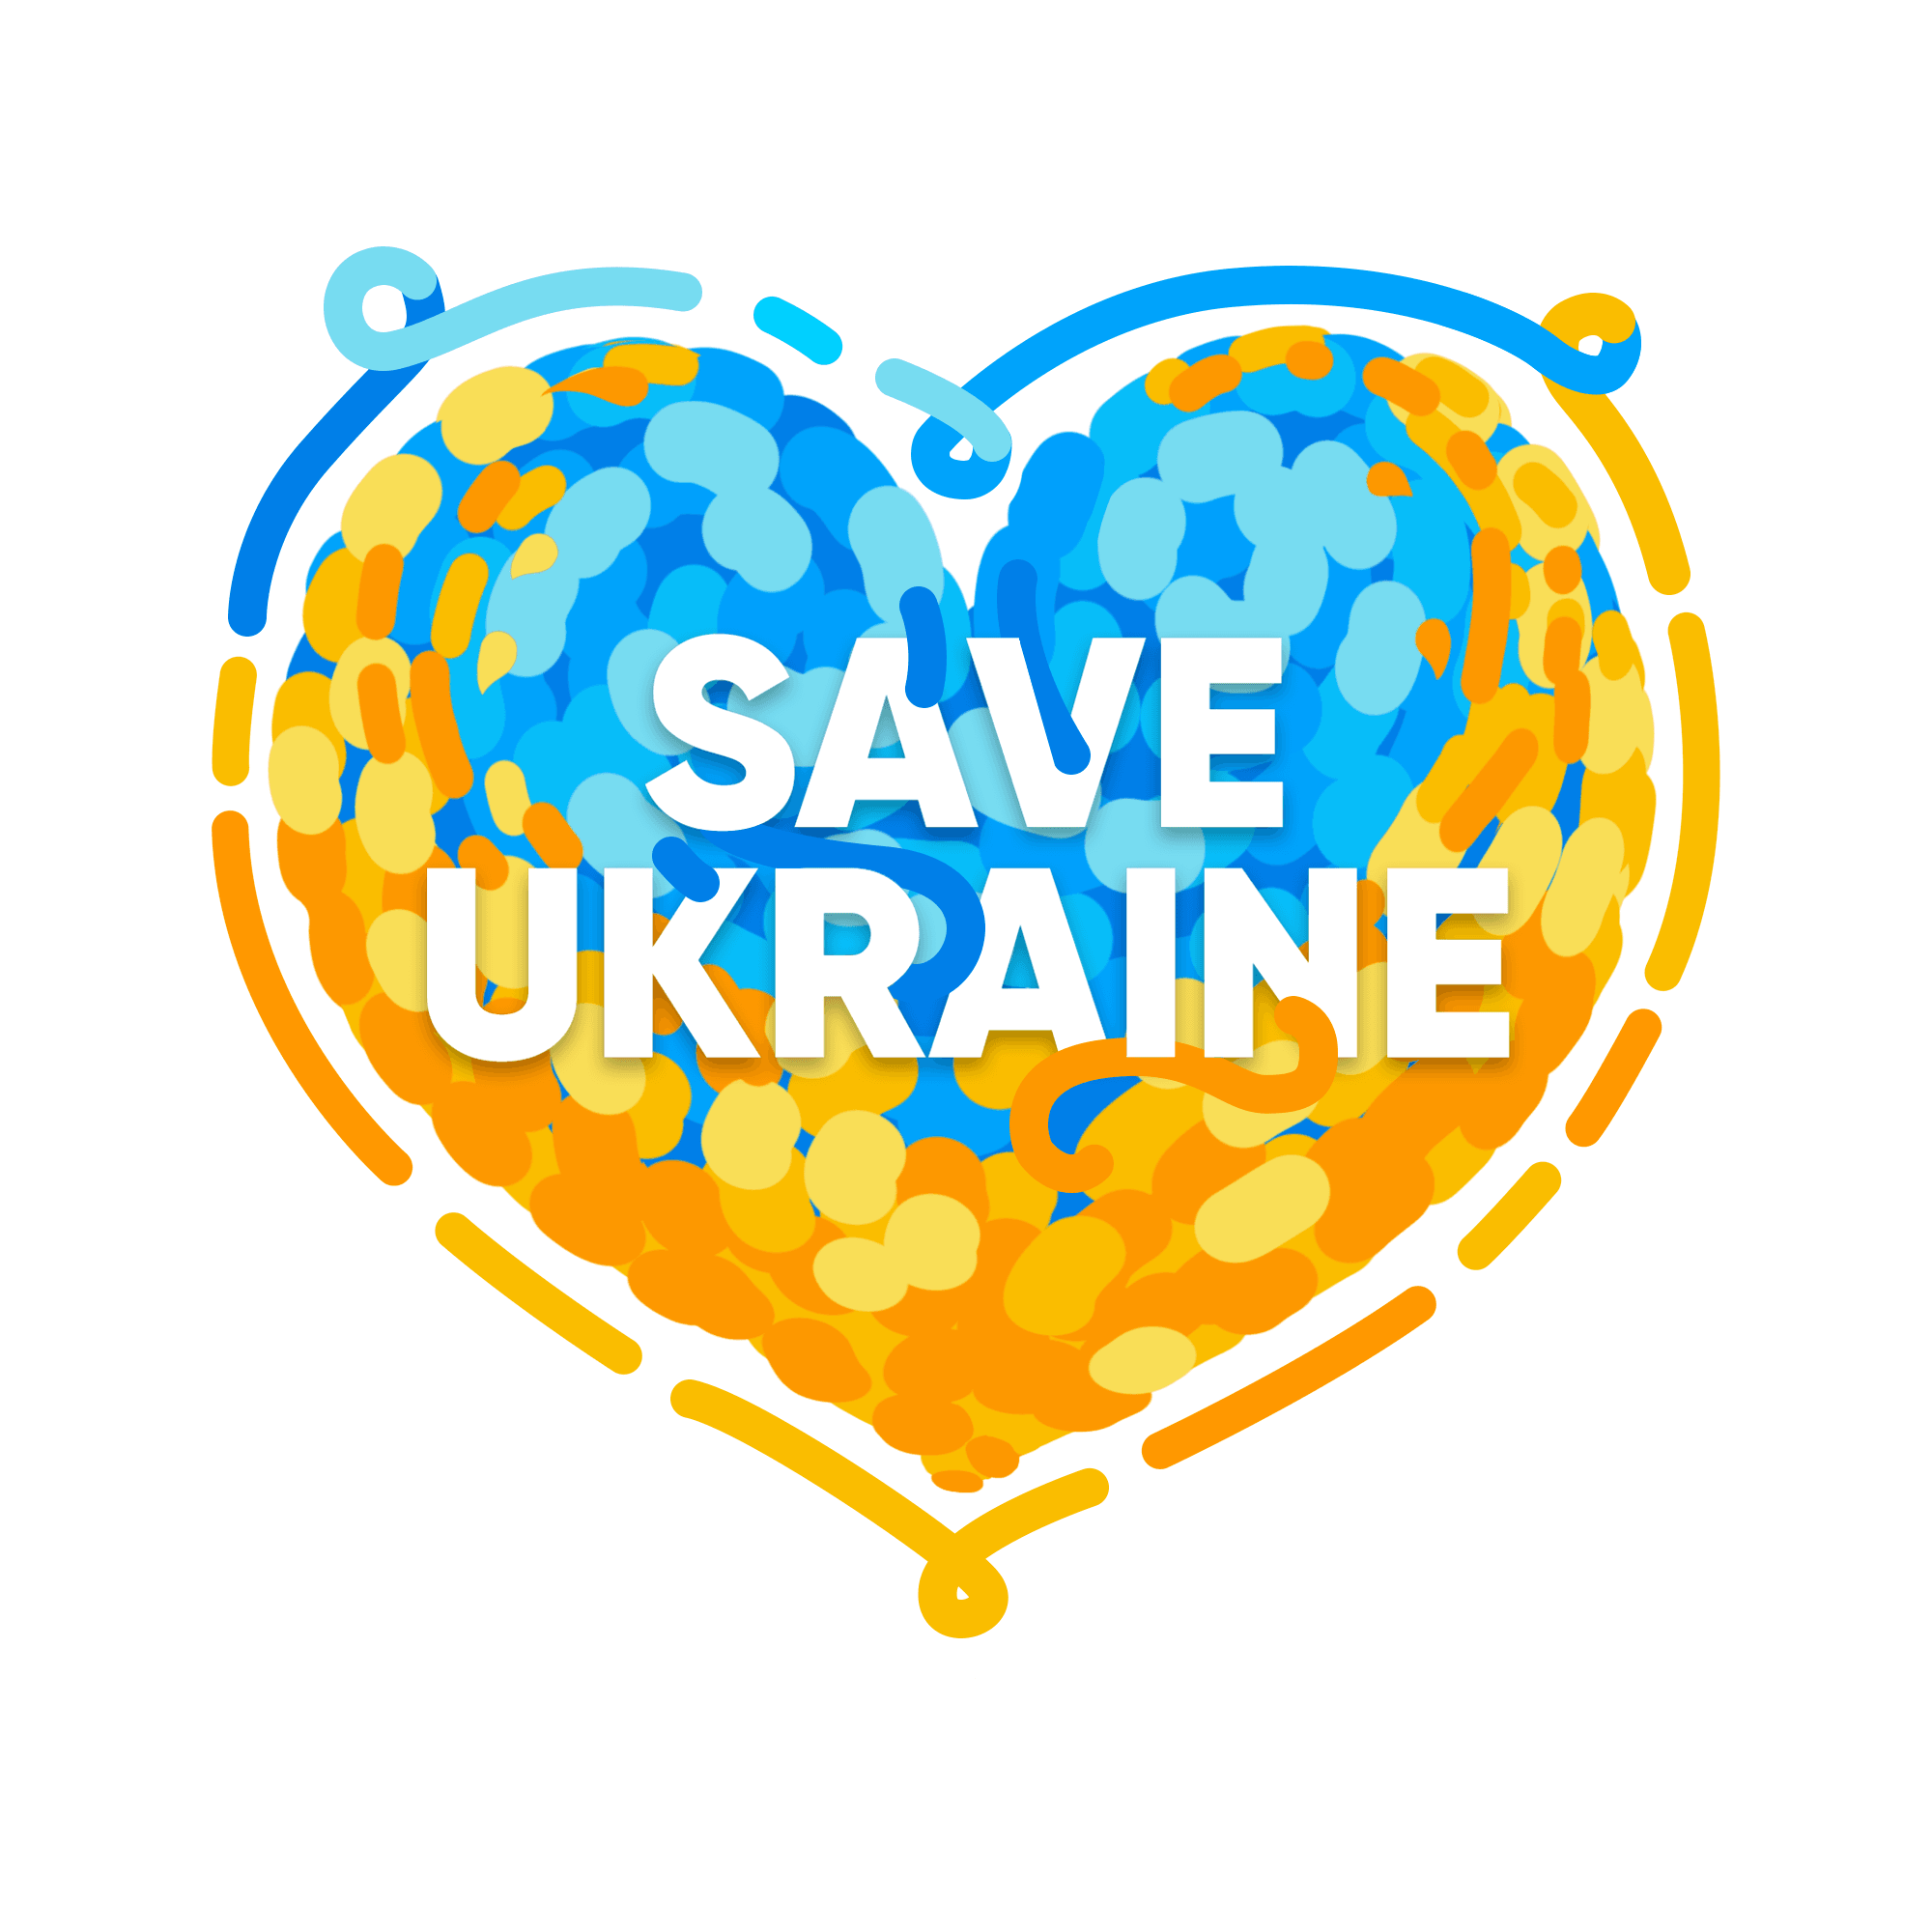 "Save Ukraine" #007: The Splash